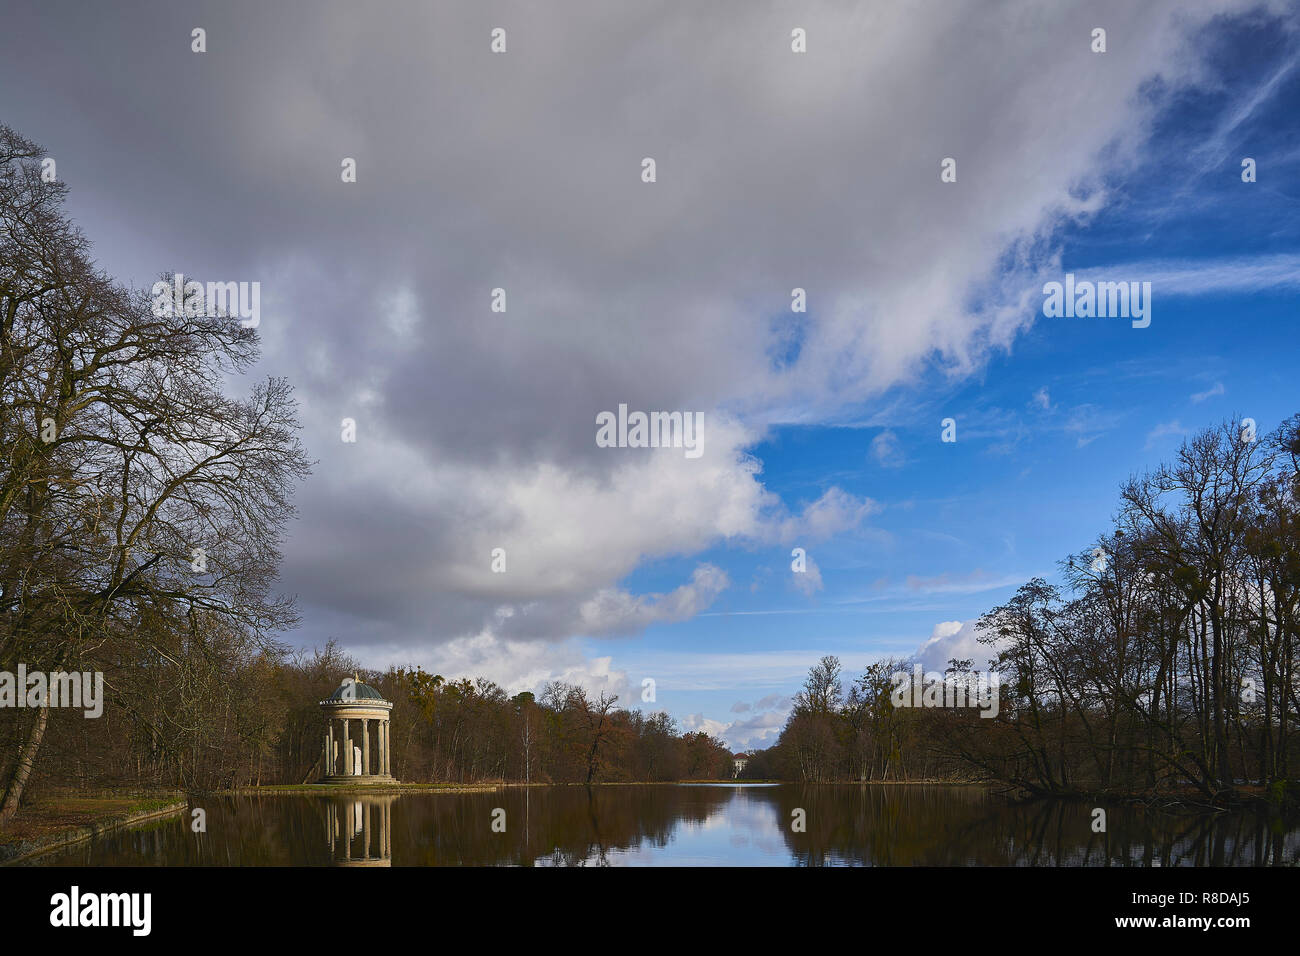 Le temple d'apollon reflète dans le lac et au loin le château de Nymphenburg, ciel bleu et nuages, se sent comme une peinture à l'huile, Munich, Allemagne Banque D'Images